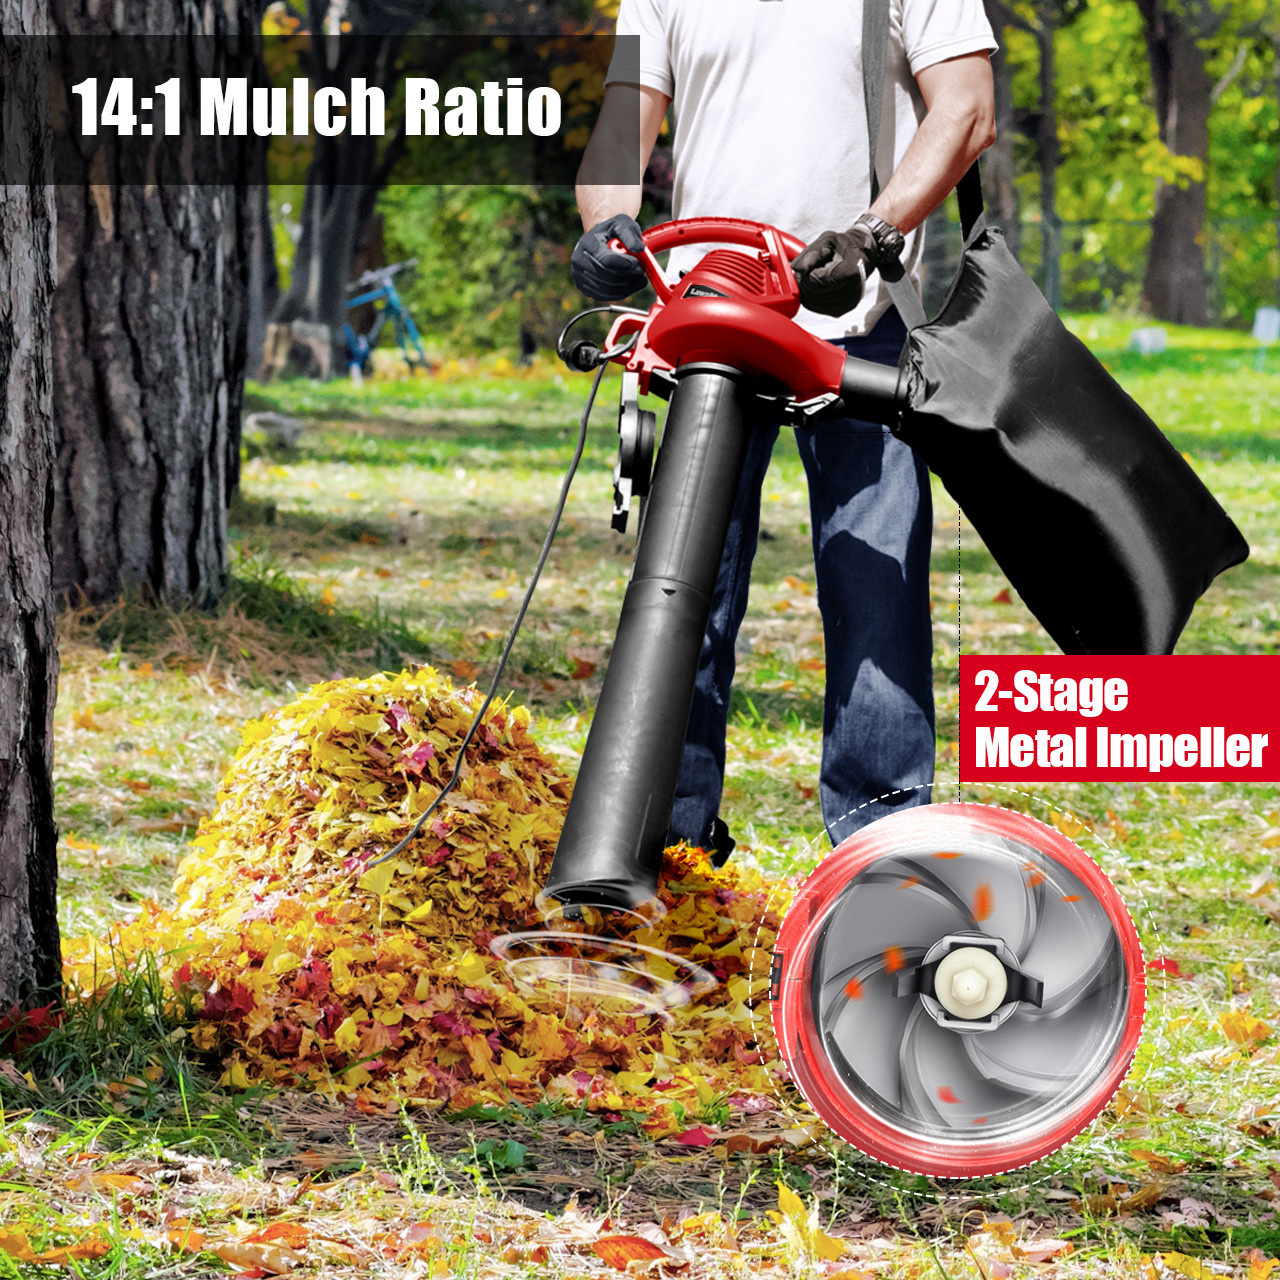 BLACK+DECKER Electric Leaf Blower, Leaf Vacuum and Mulcher 3 in 1